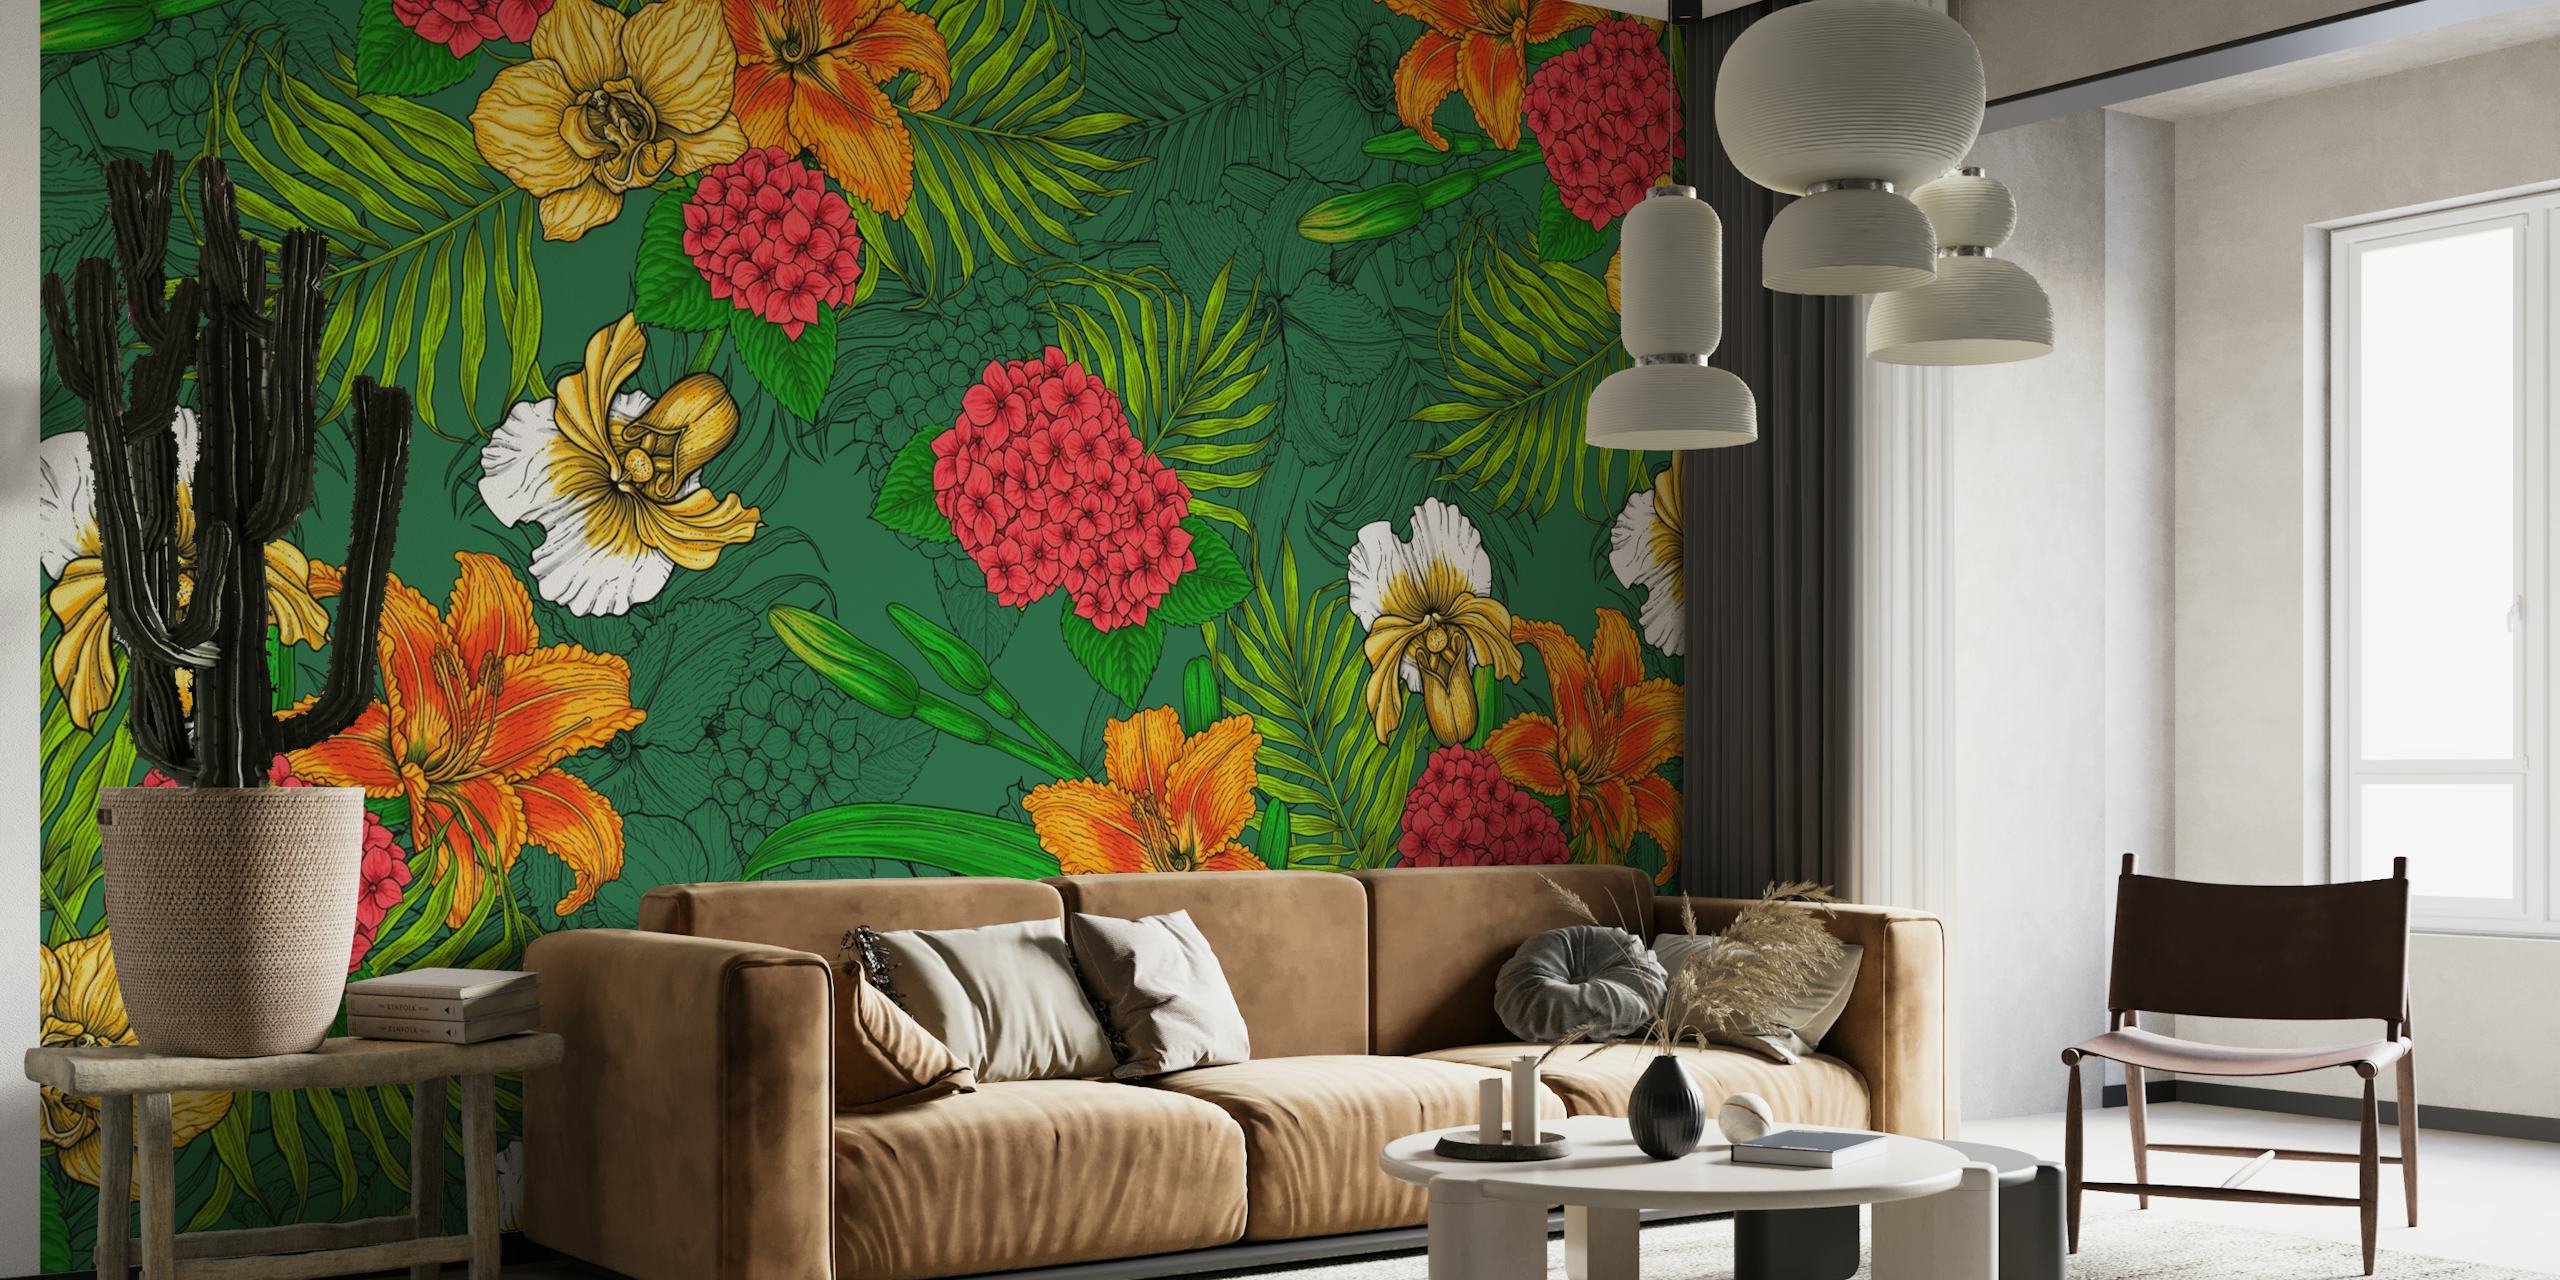 fotomural vinílico de parede com padrão floral tropical vibrante com flores laranja e amarelas e folhagem verde.